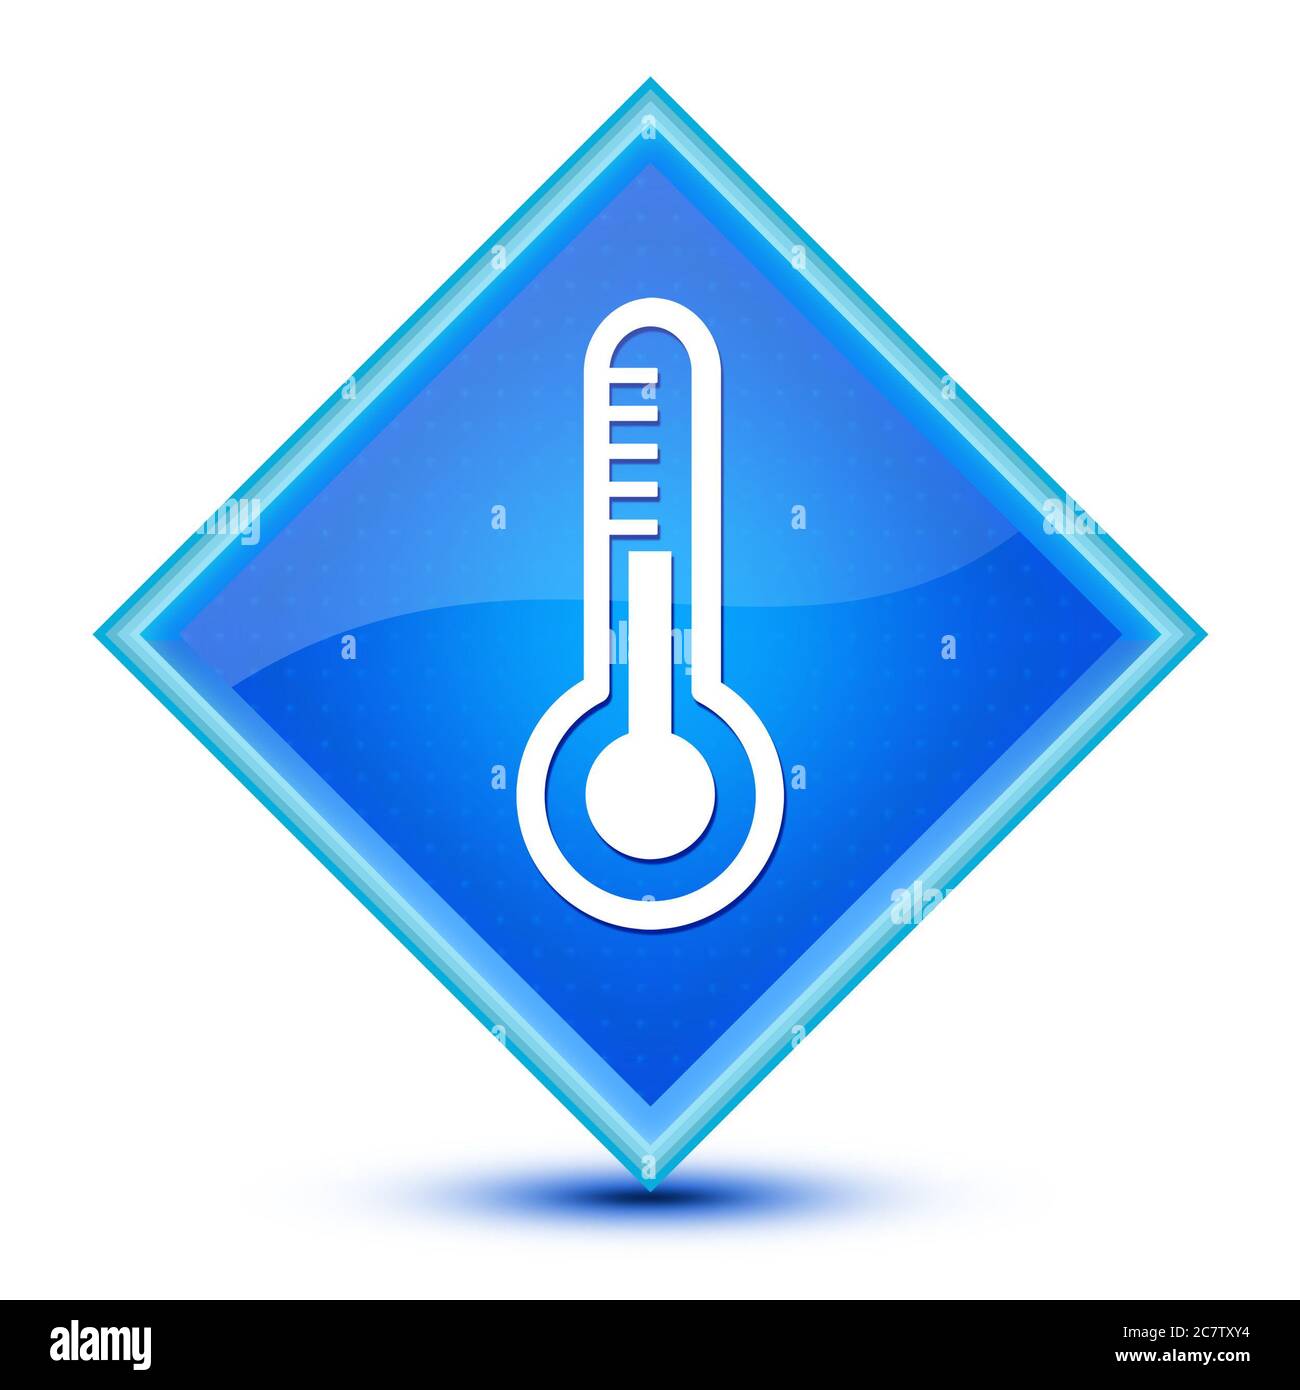 Icona del termometro isolata su speciale simbolo astratto con il pulsante a diamante blu Foto Stock